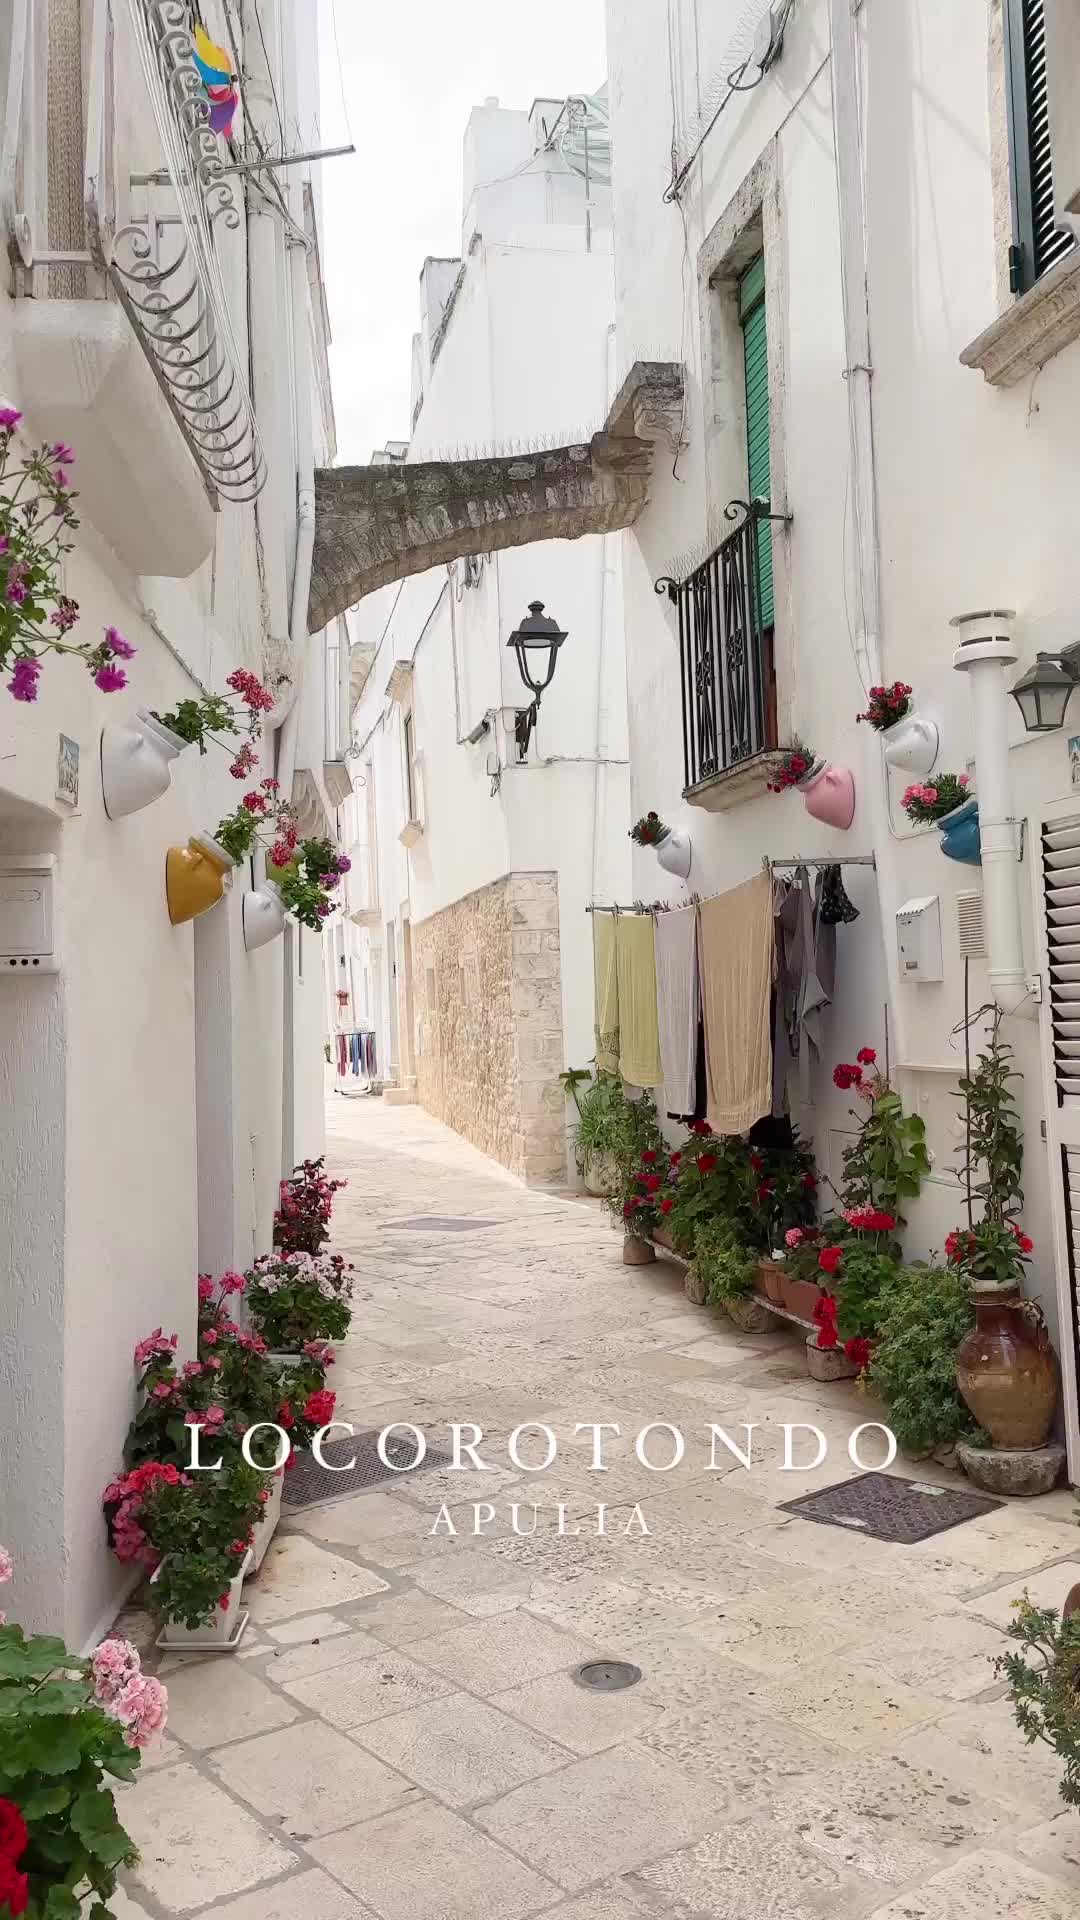 Discover the Beauty of Locorotondo, Italy